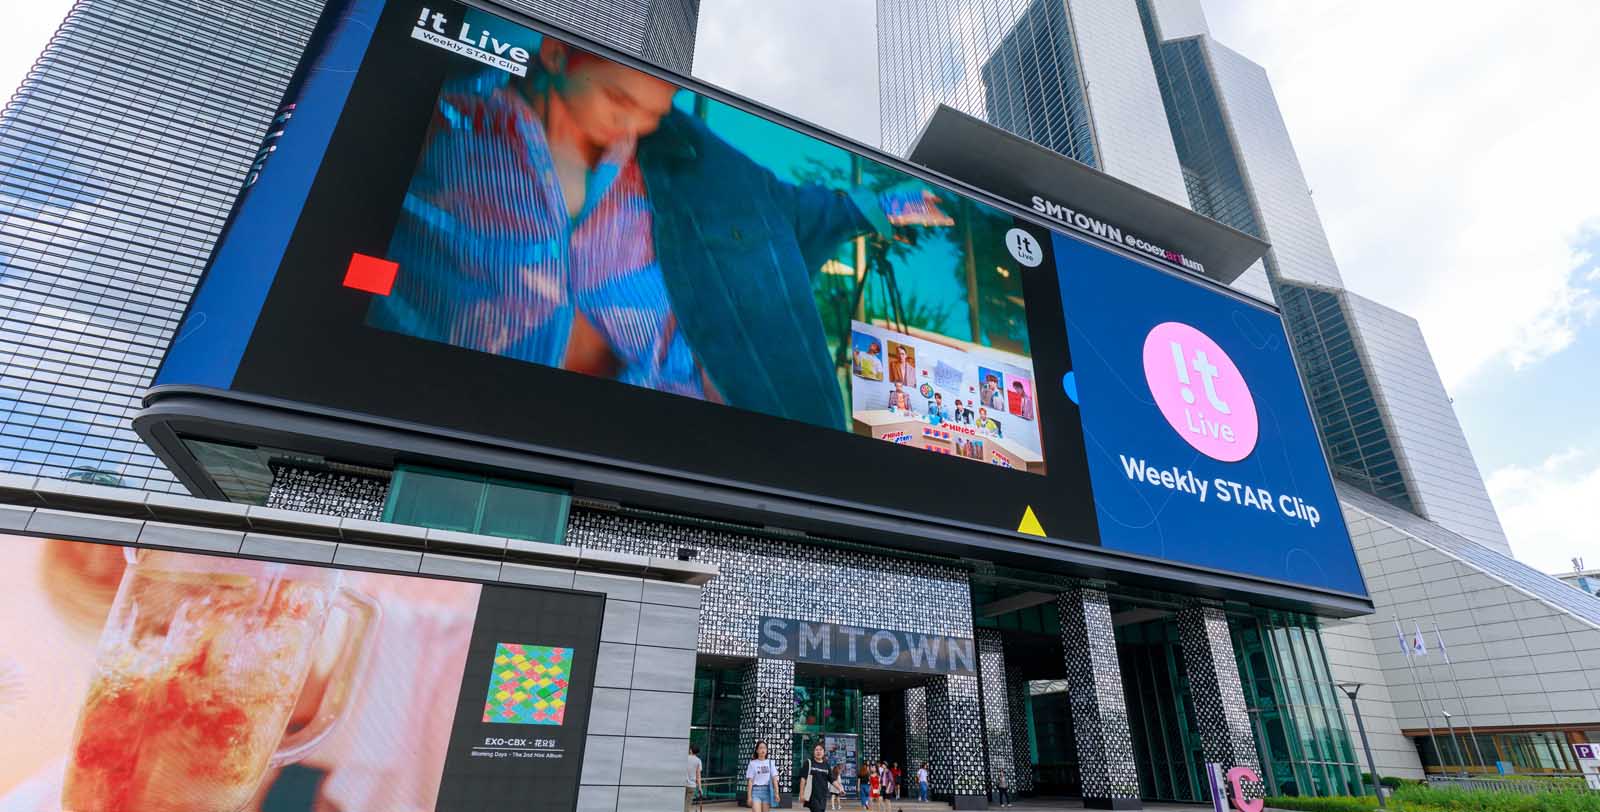 LED Digital Signage Billboards